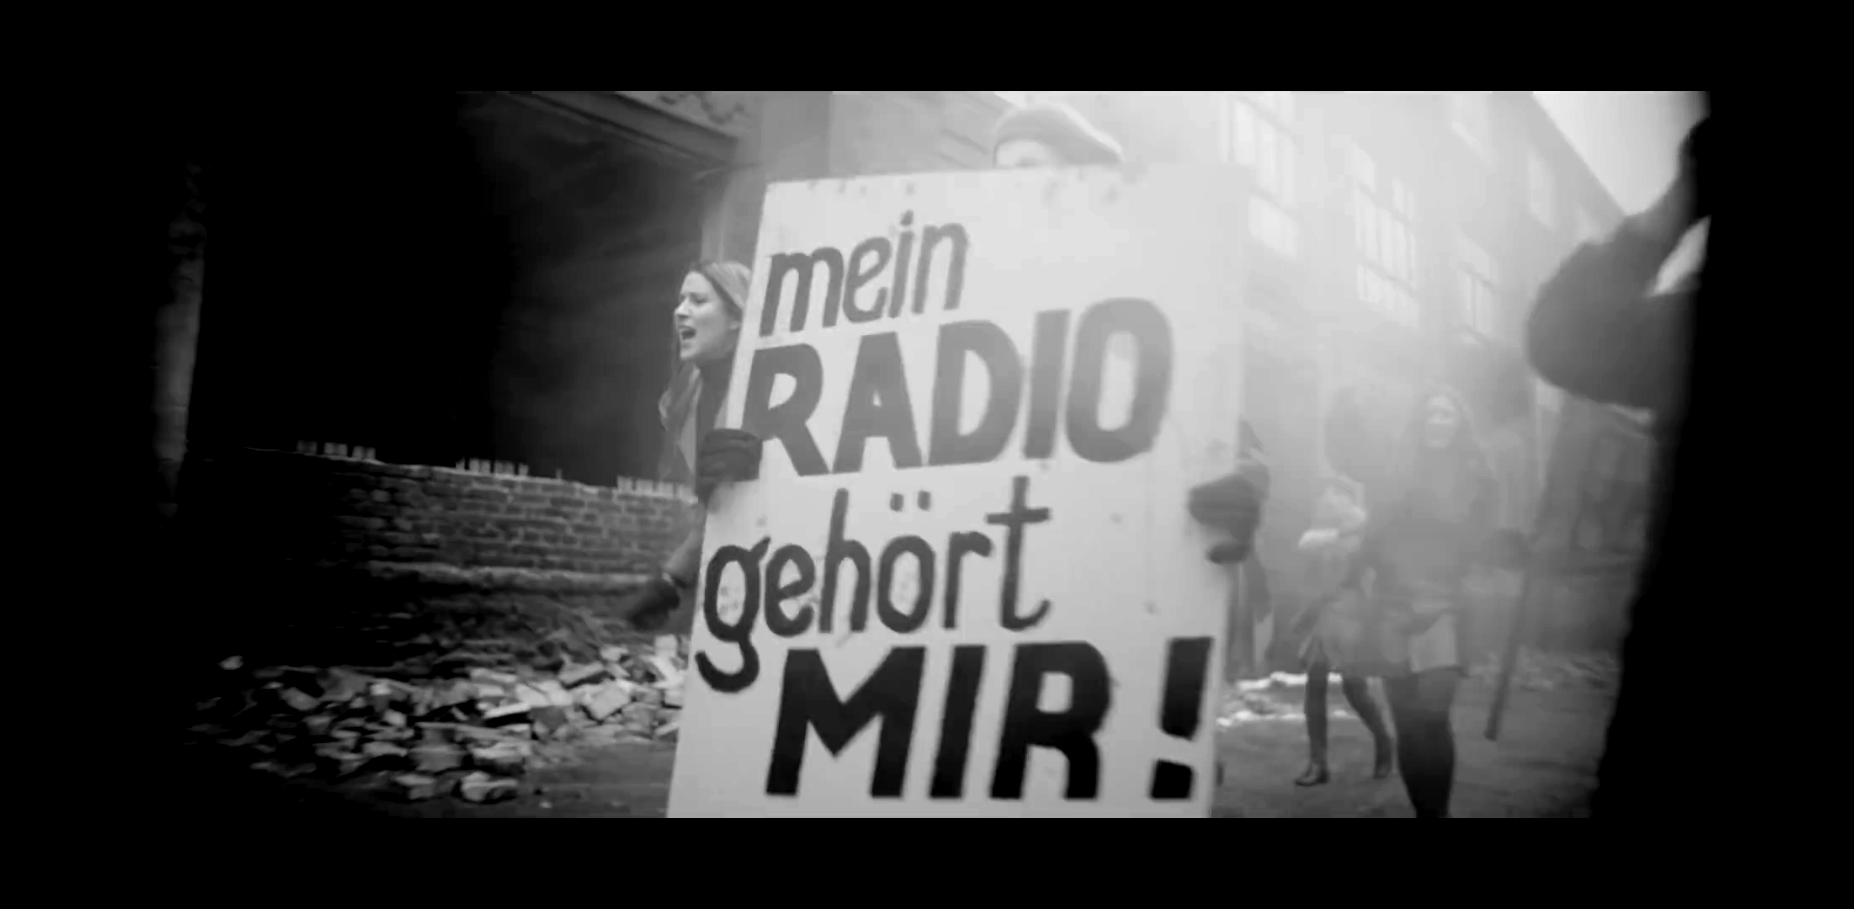 Mein Radio gehört mir! Copyright: Ramms+tein